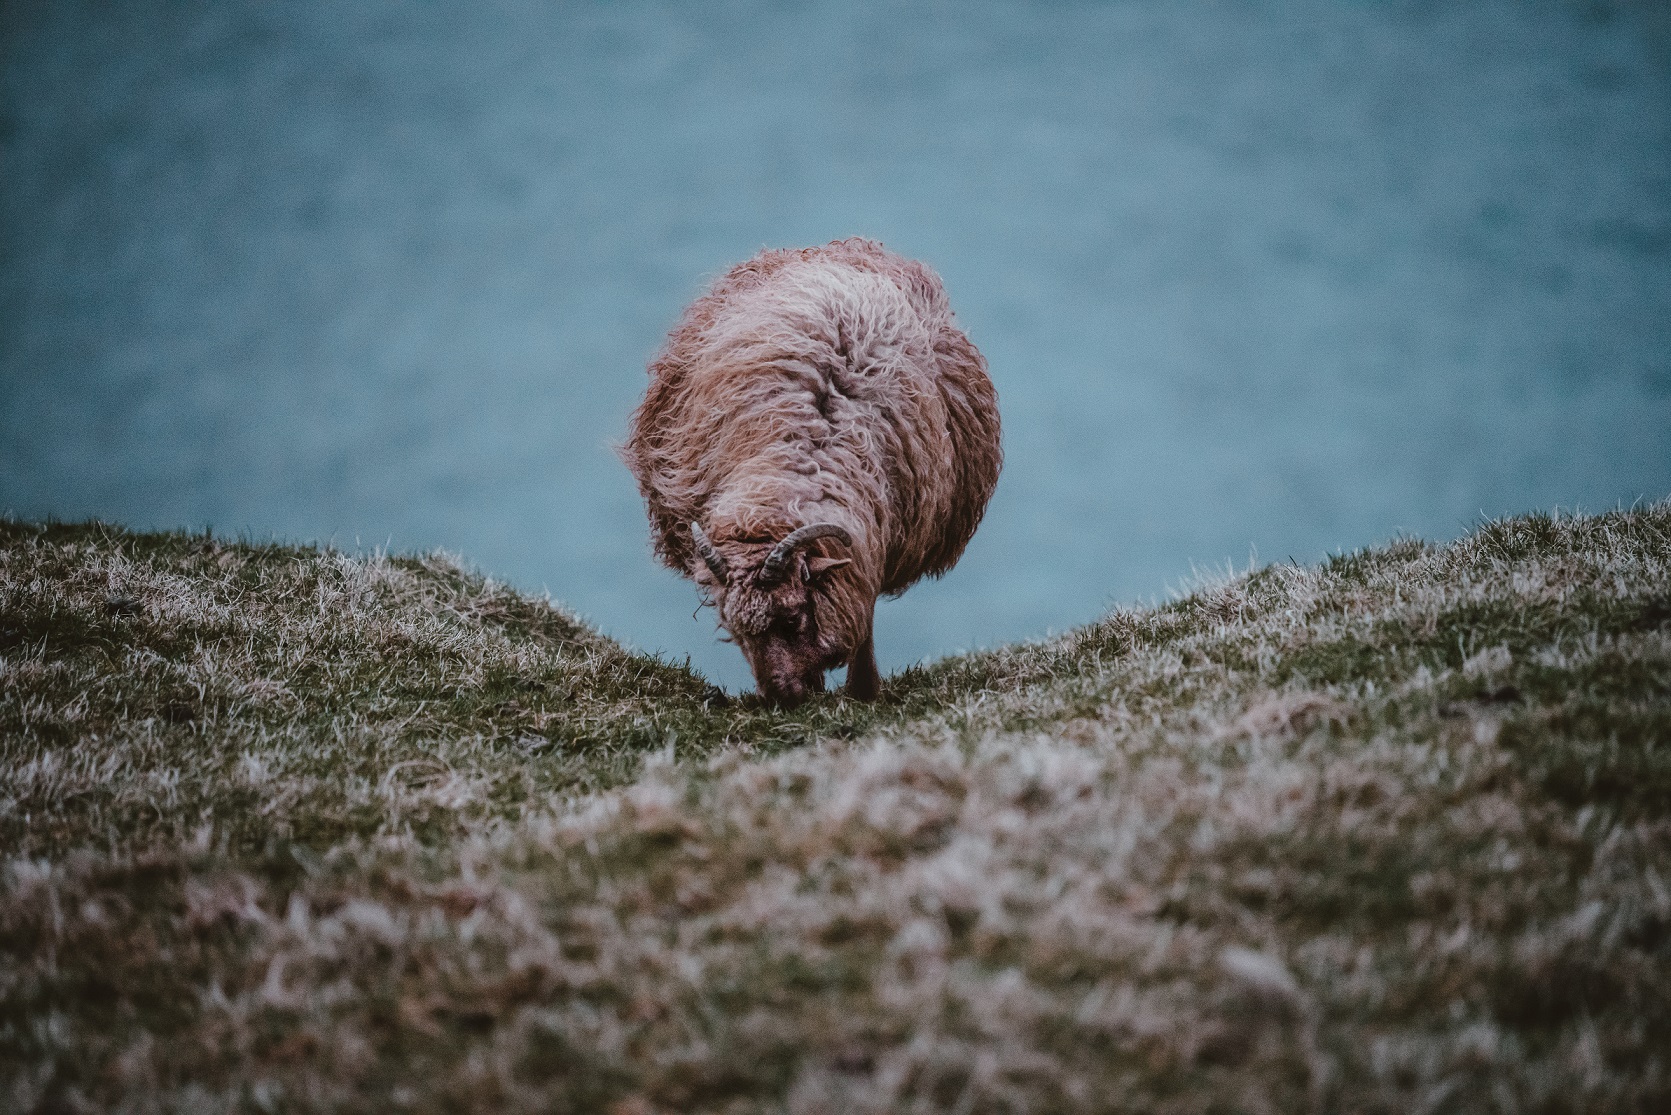 Merino sheep eating grass.